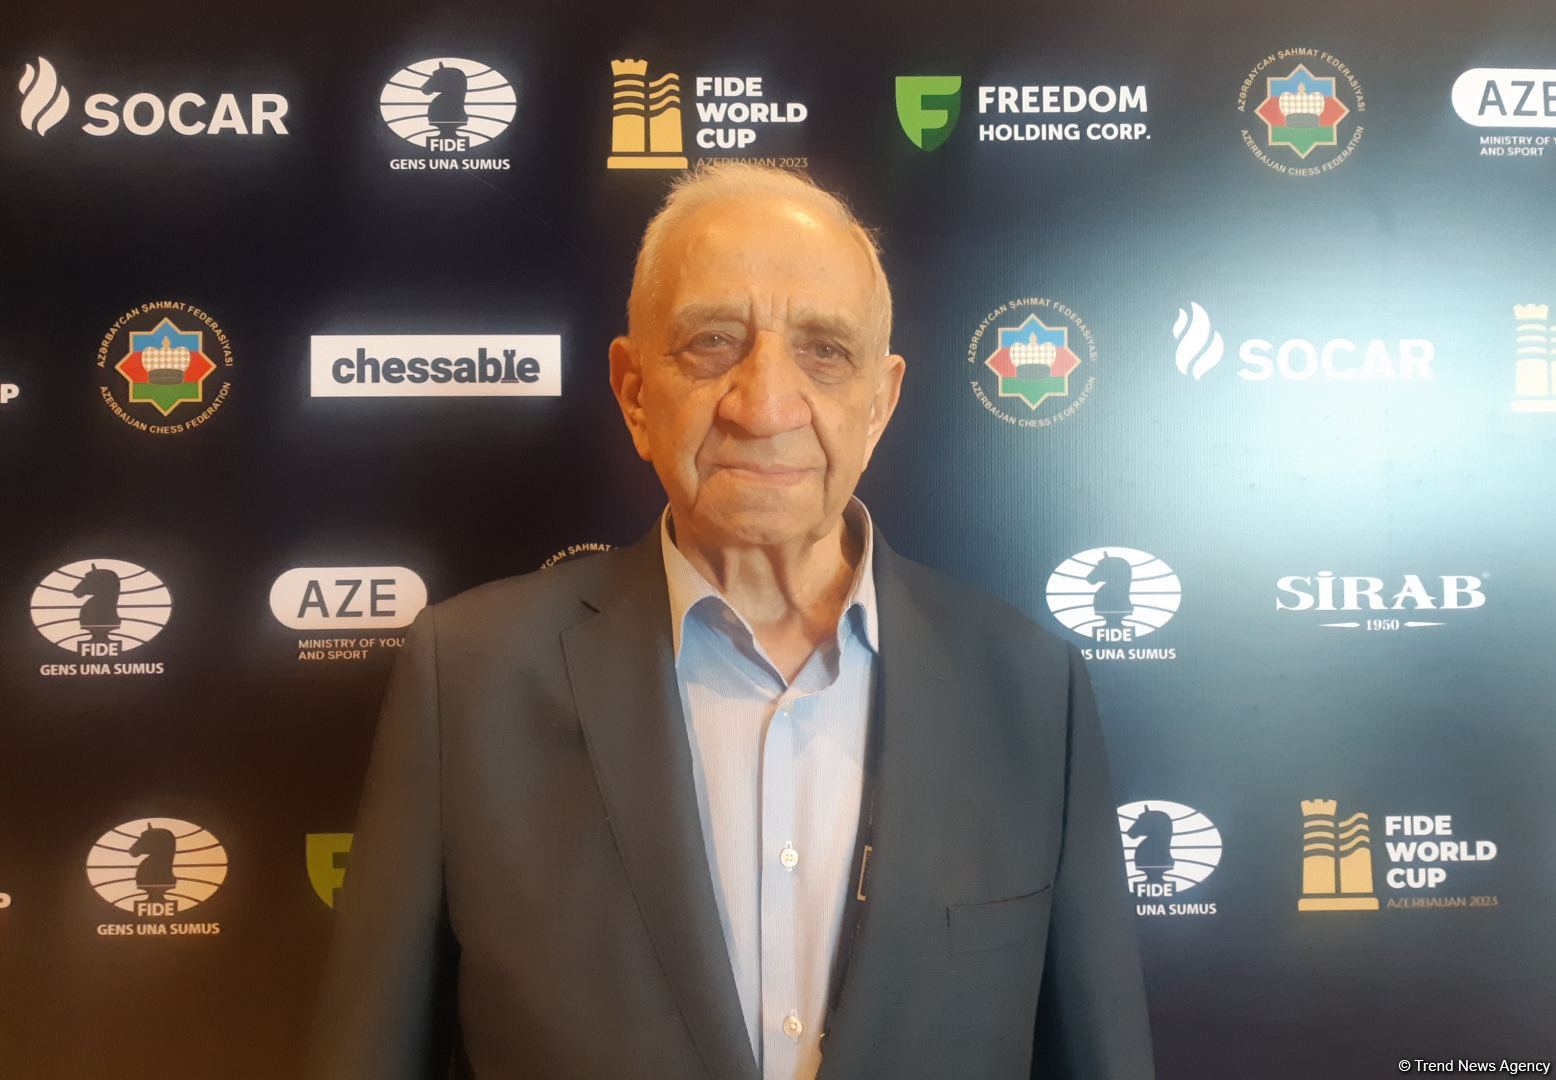 На Кубке мира идет бескомпромиссная борьба - первый вице-президент Федерации шахмат Азербайджана